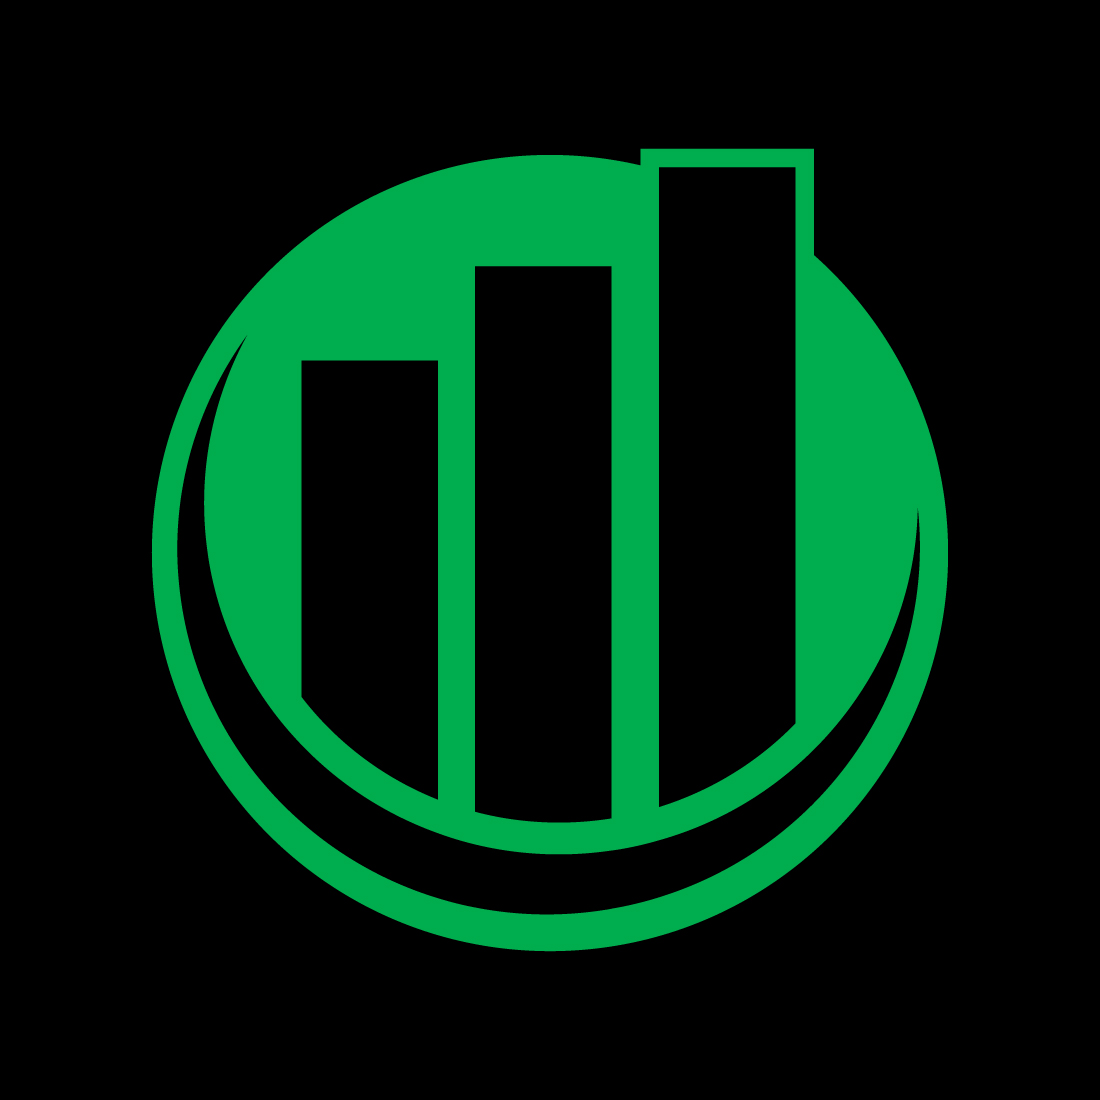 Financial logo creative arrow, Vector design concept cover image.